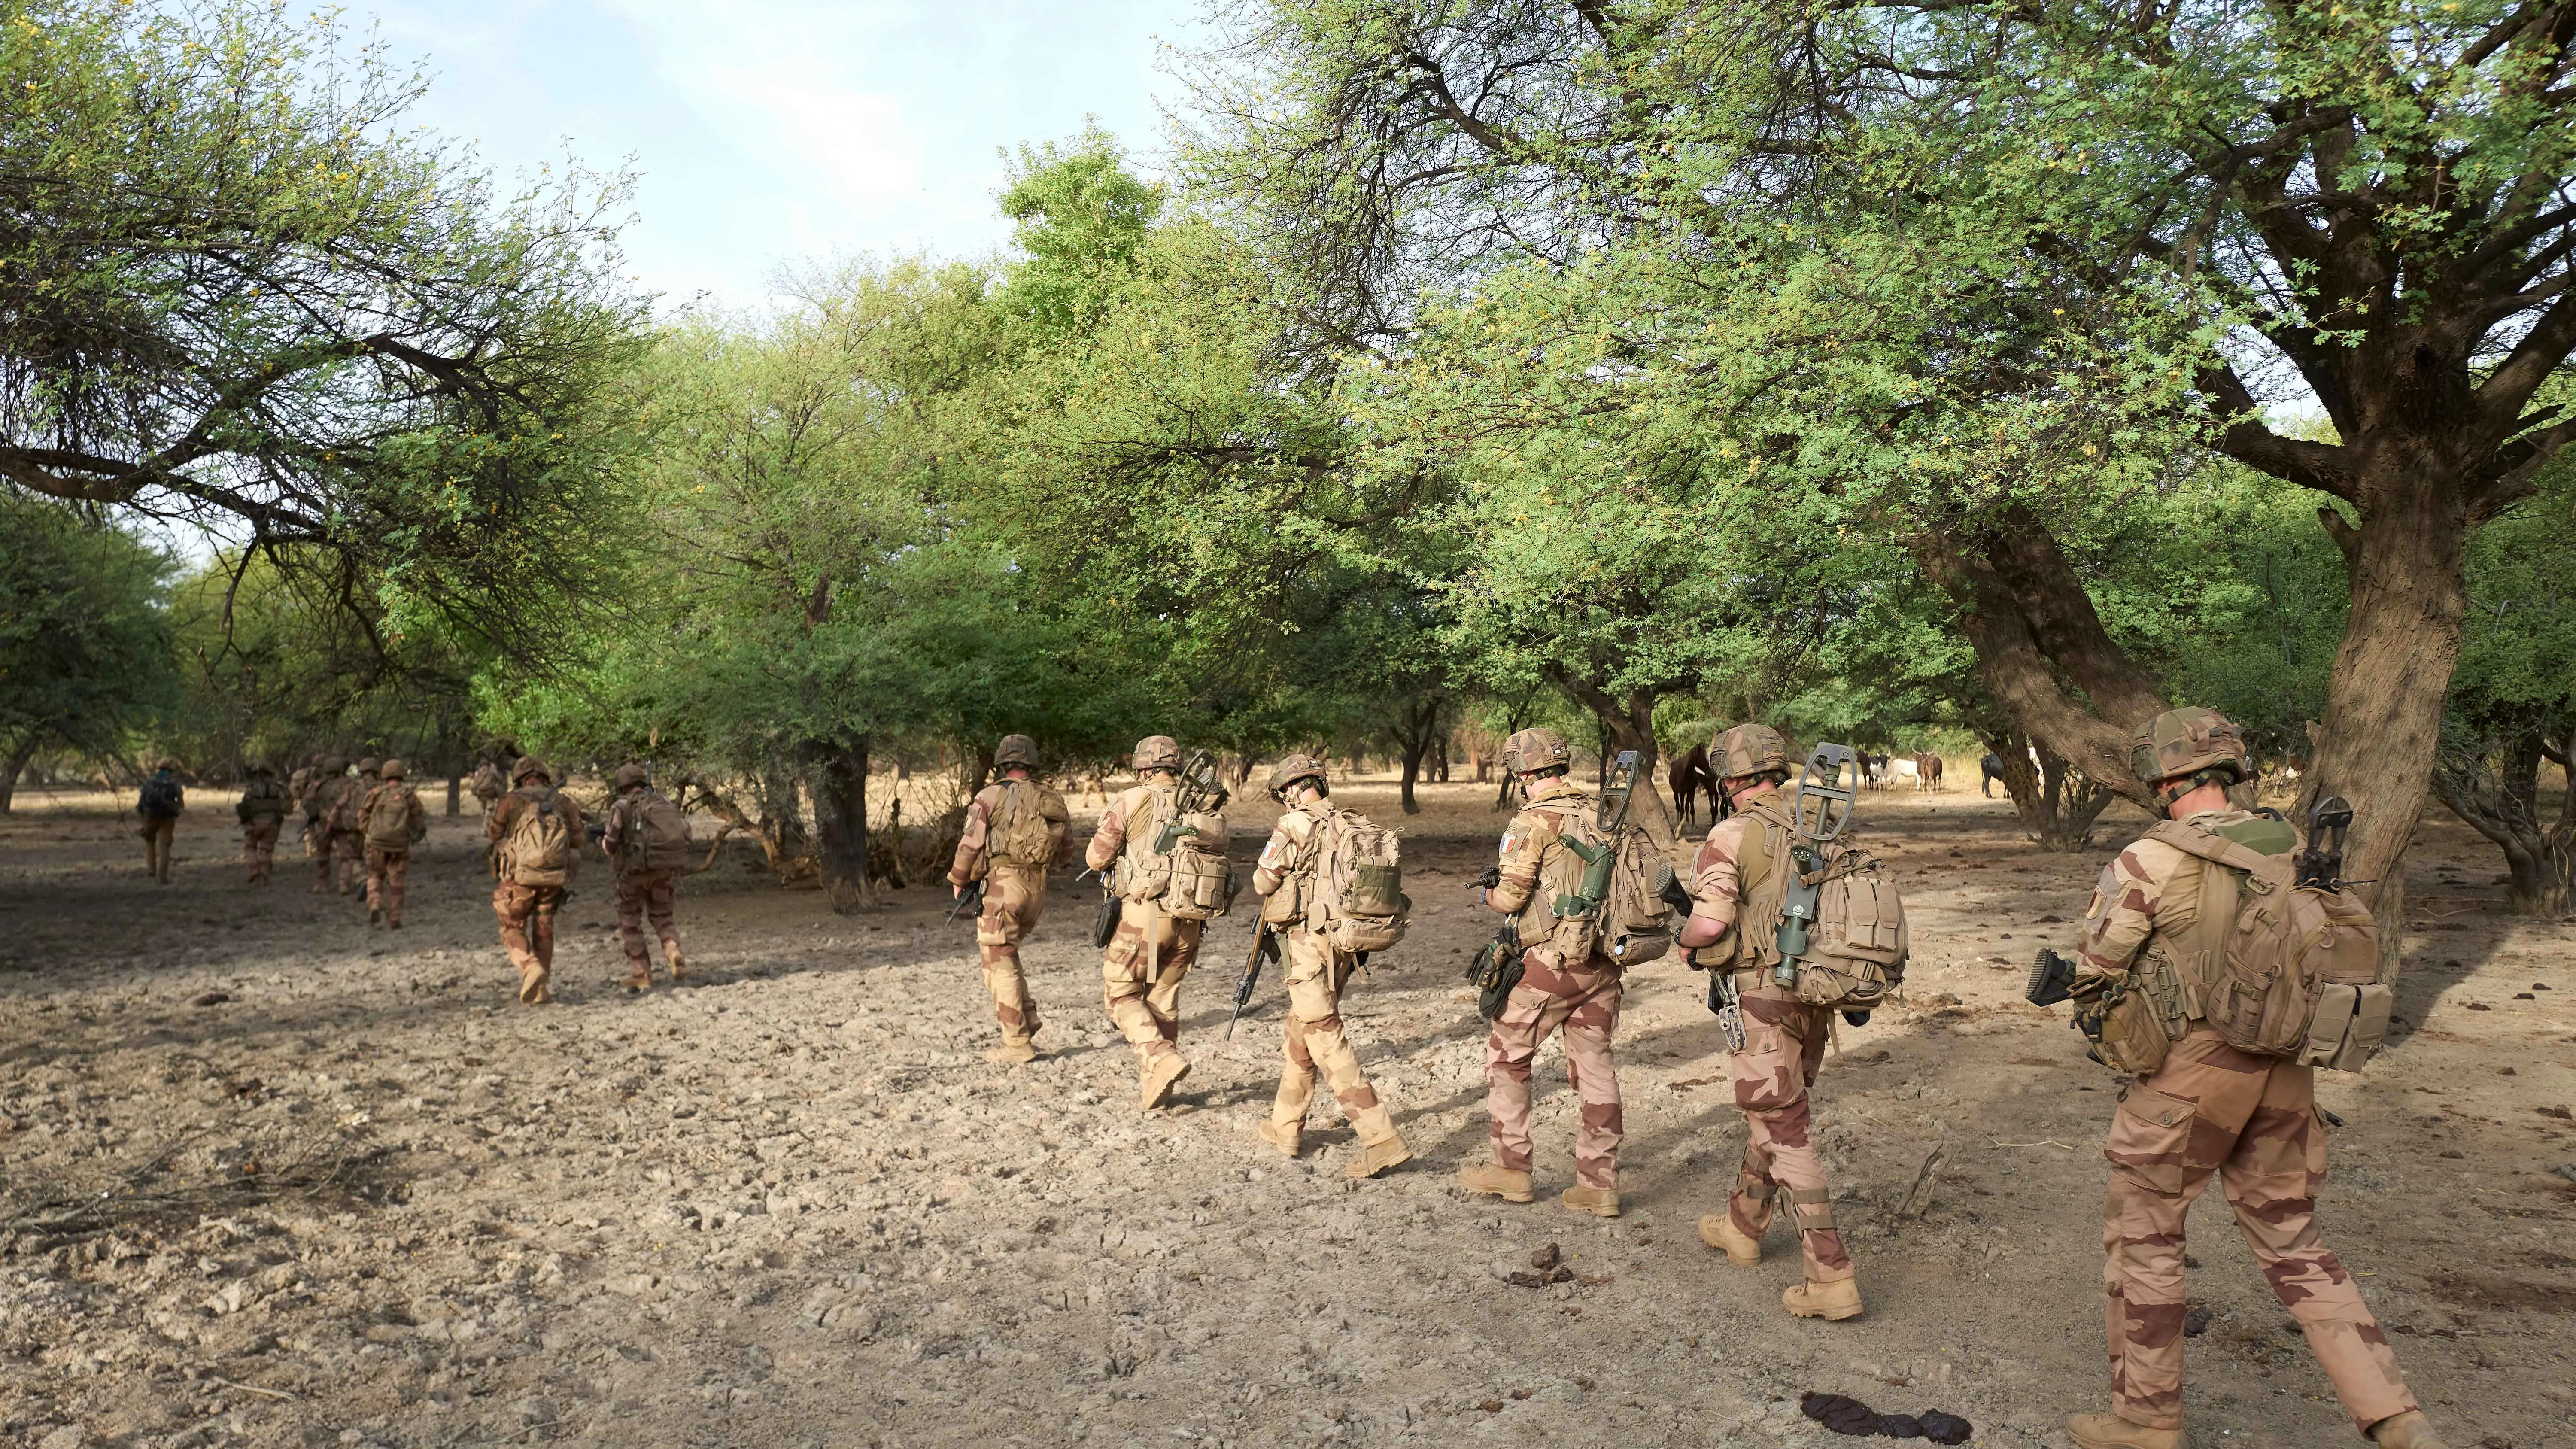 قطع الأشجار "مصدر قوي" لتمويل جماعات مسلحة في مالي